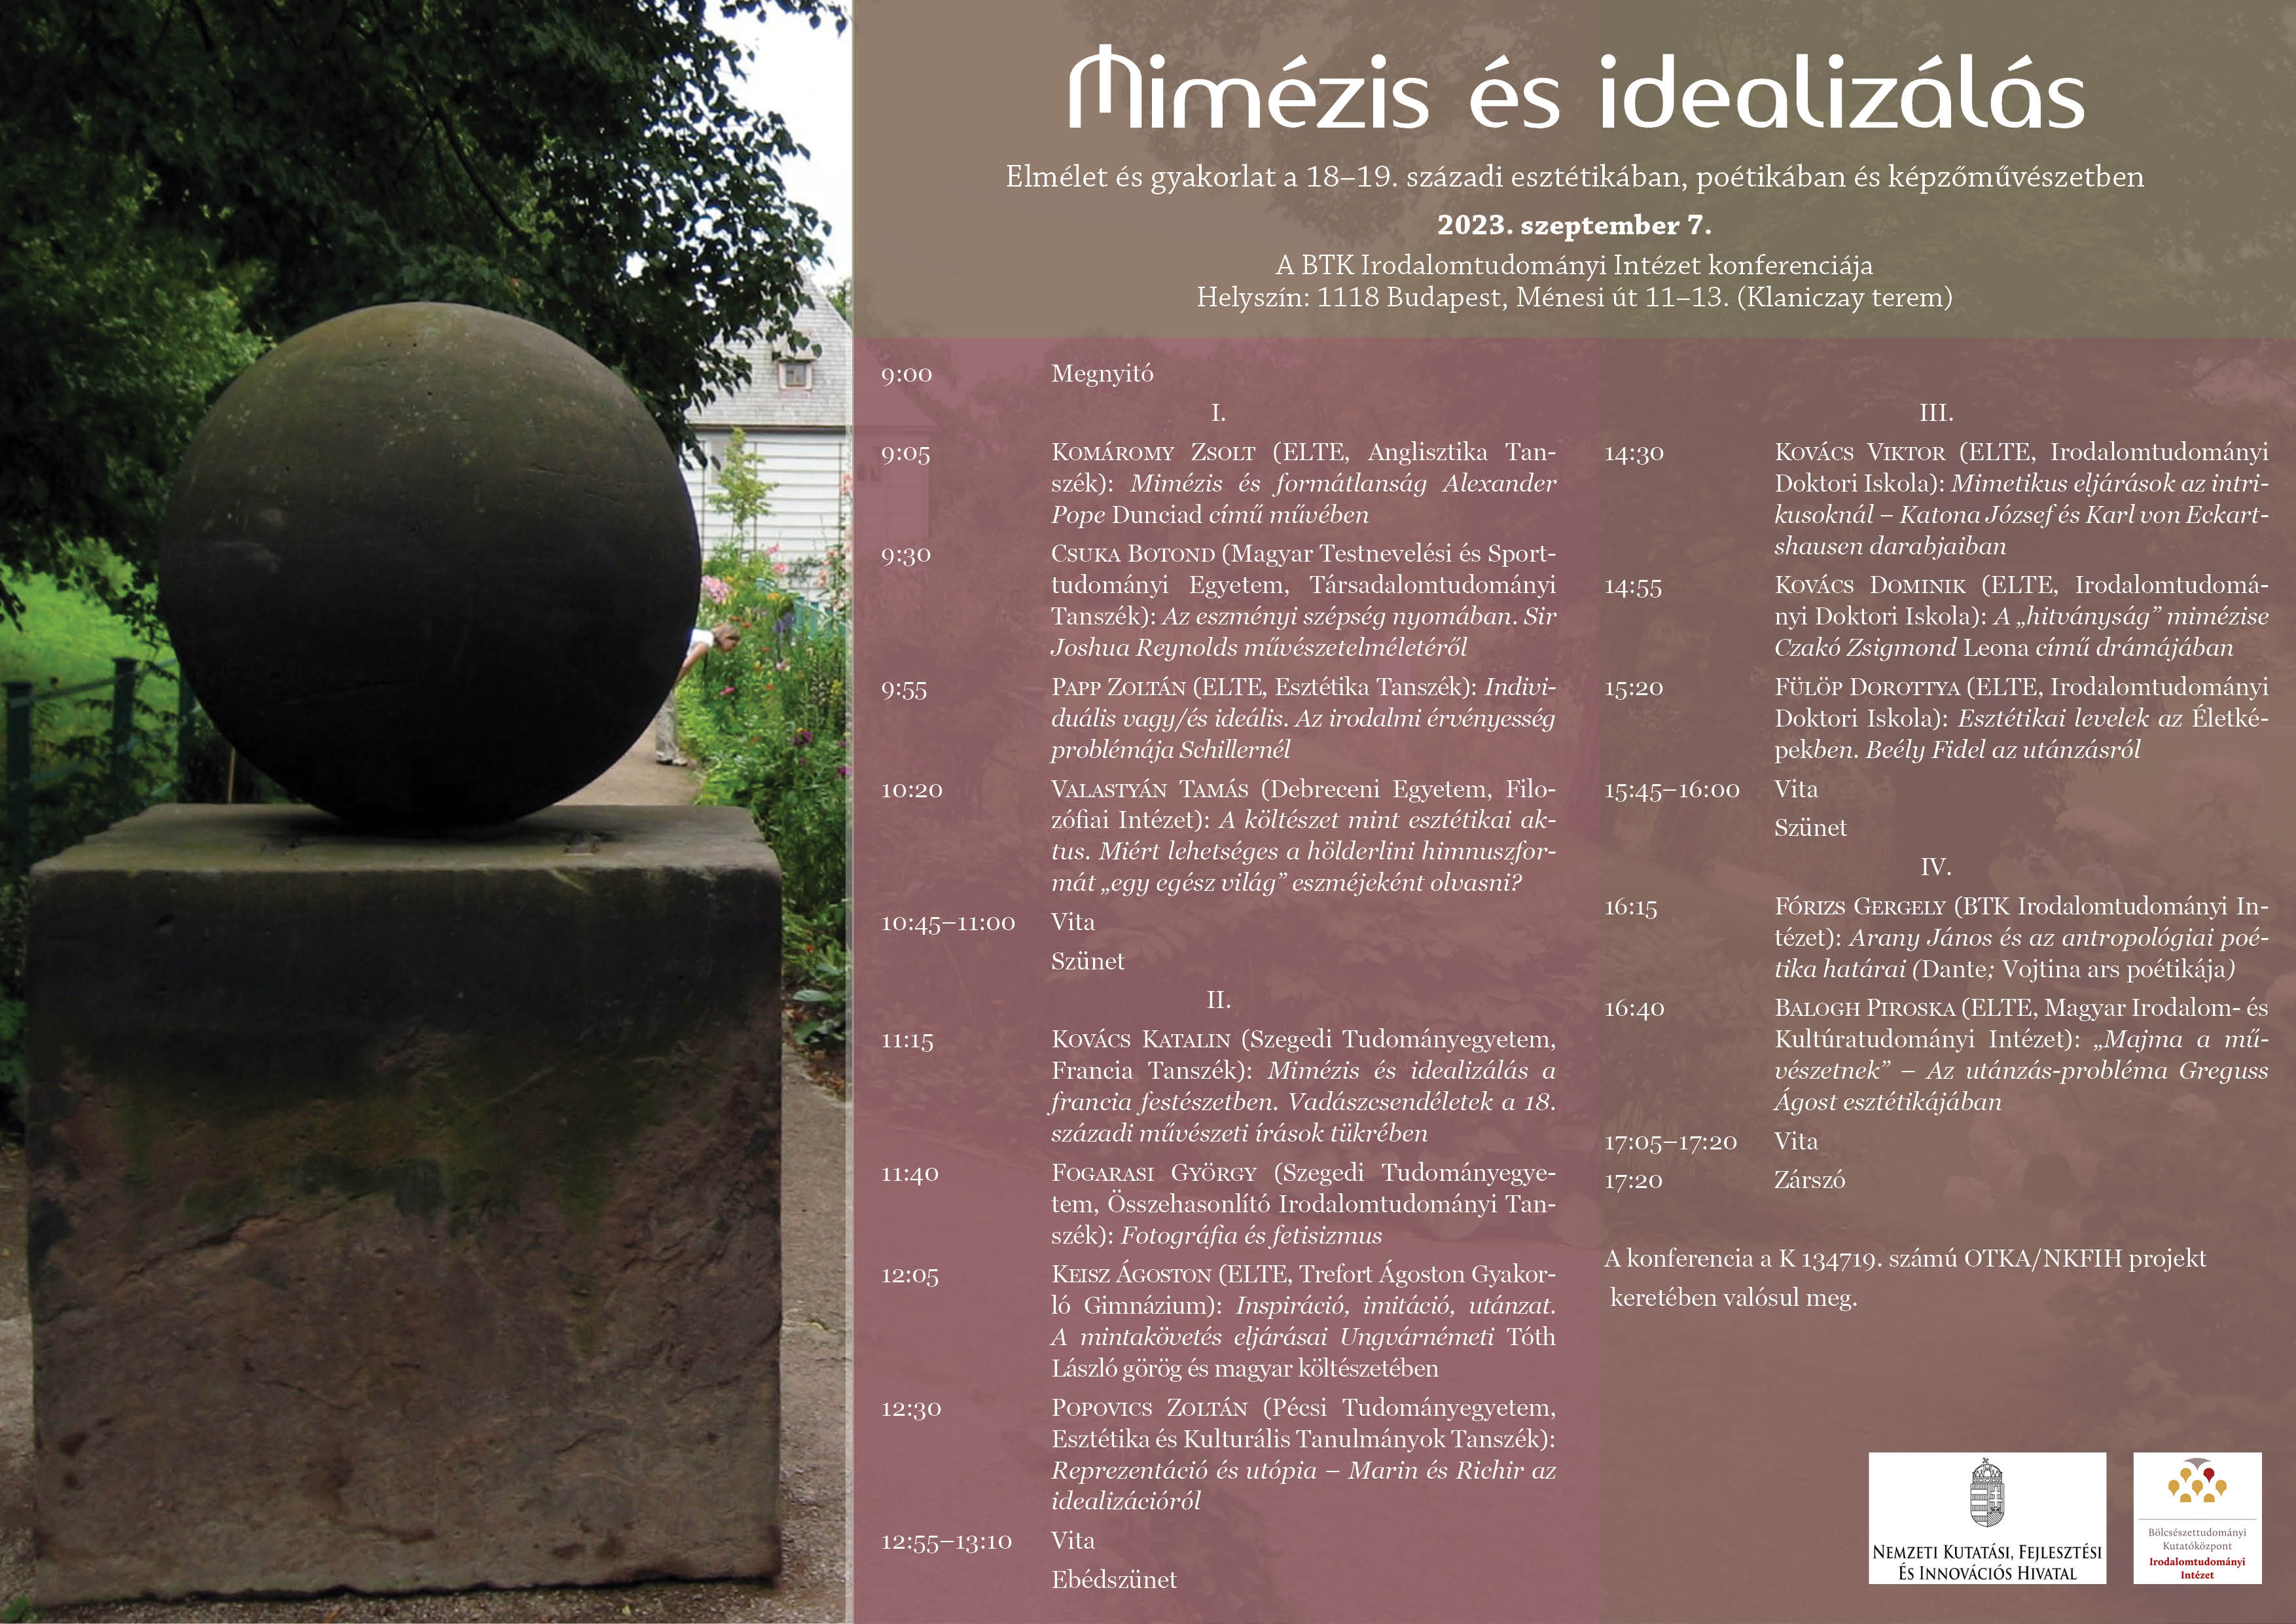 Mimézis és idealizálás  a 18–19. században – tudományos konferencia (2023. szeptember 7.)